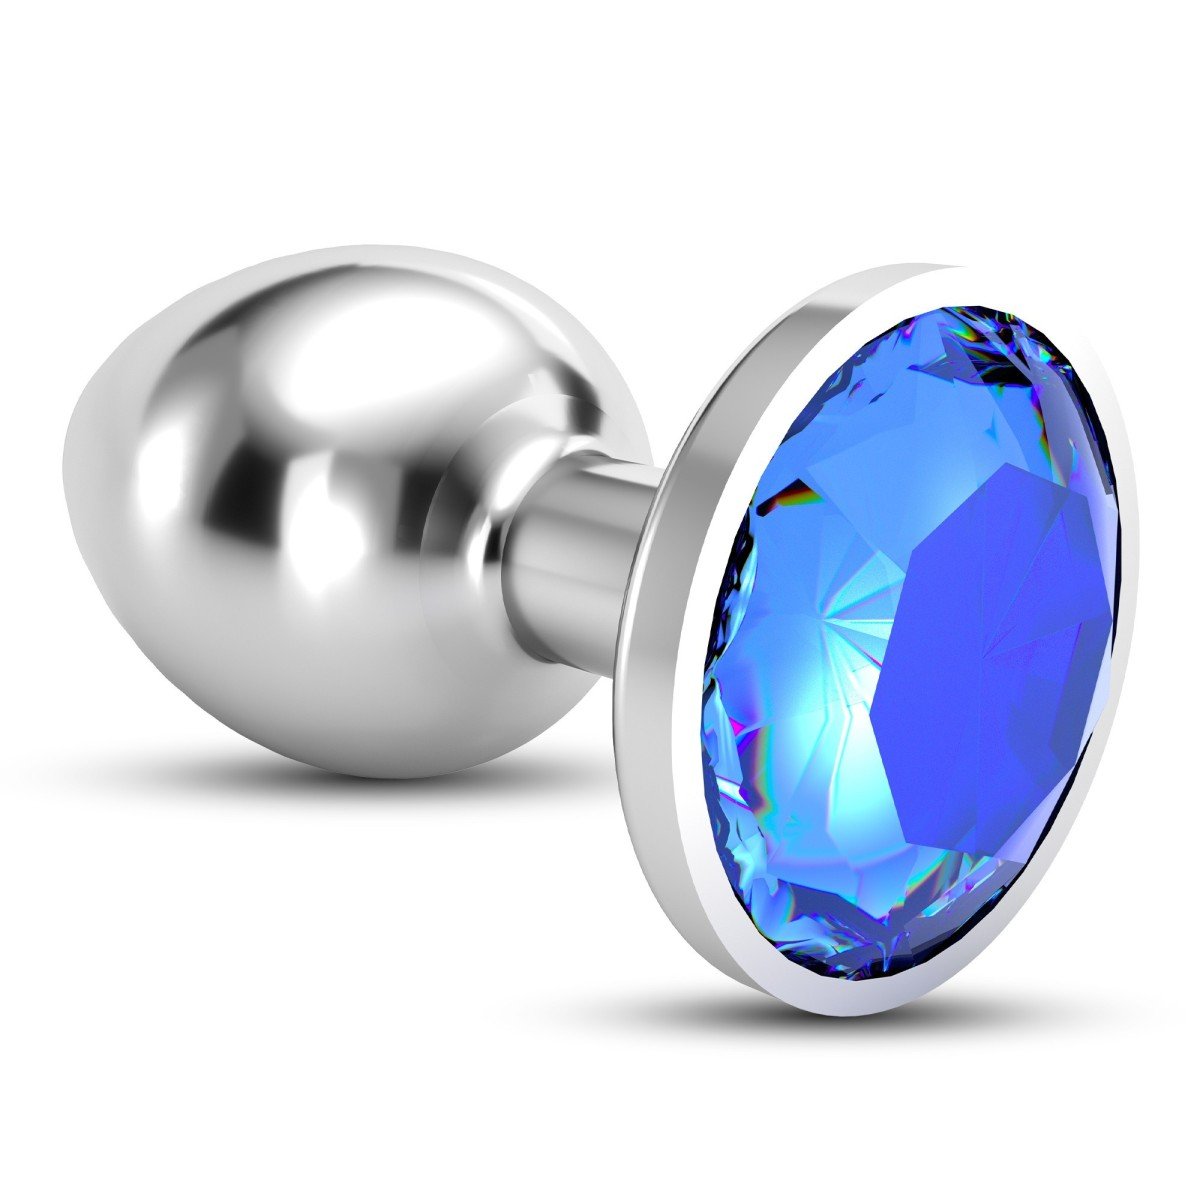 Análny šperk Crushious Bijou malý modrý, kovový análny kolík 7 x 2,7 cm